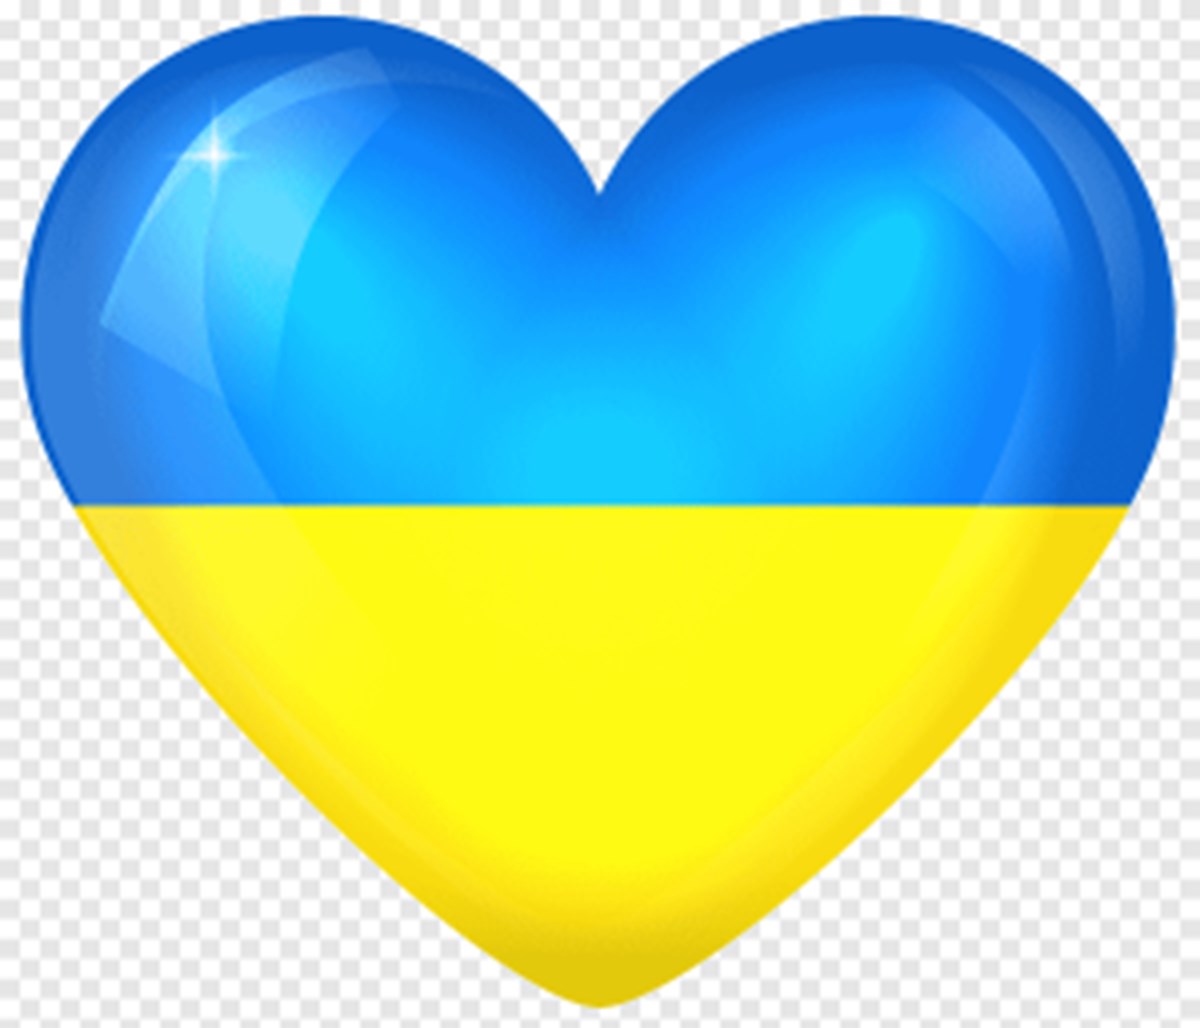 Ukraine Flag As A Heart